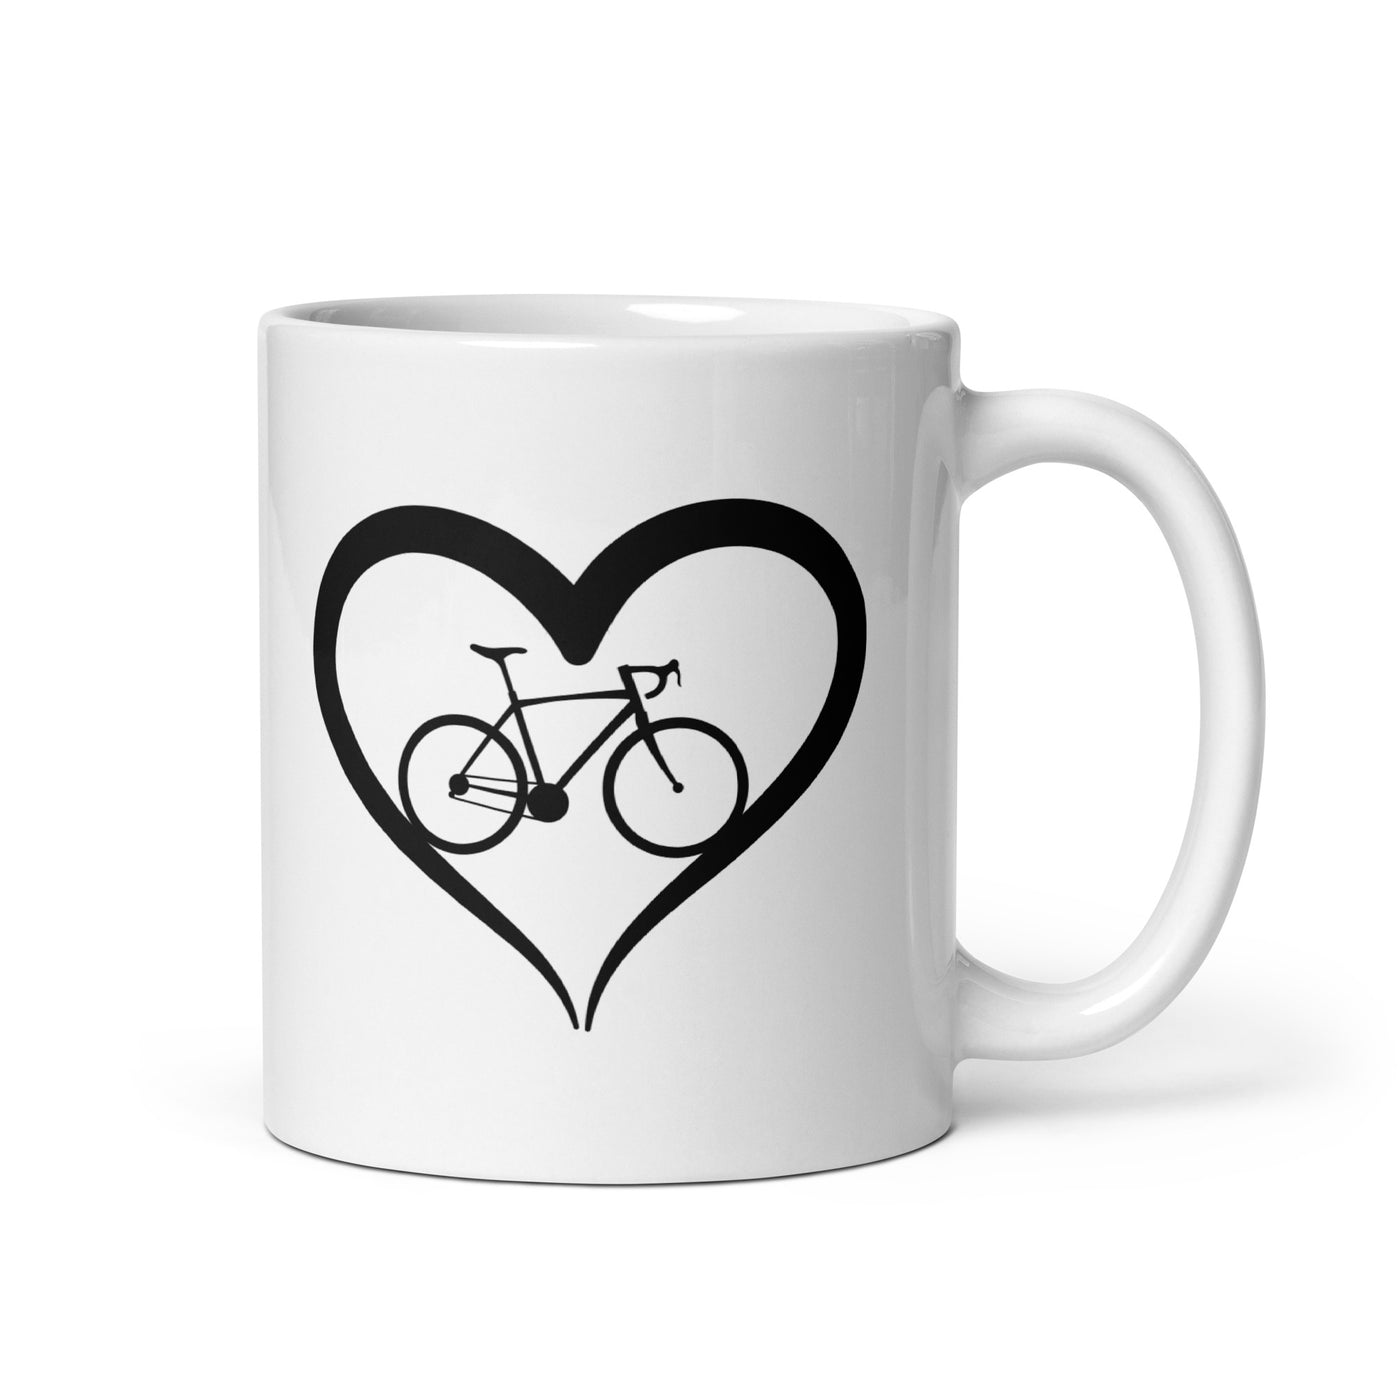 Fahrrad Und Herz - Tasse fahrrad mountainbike